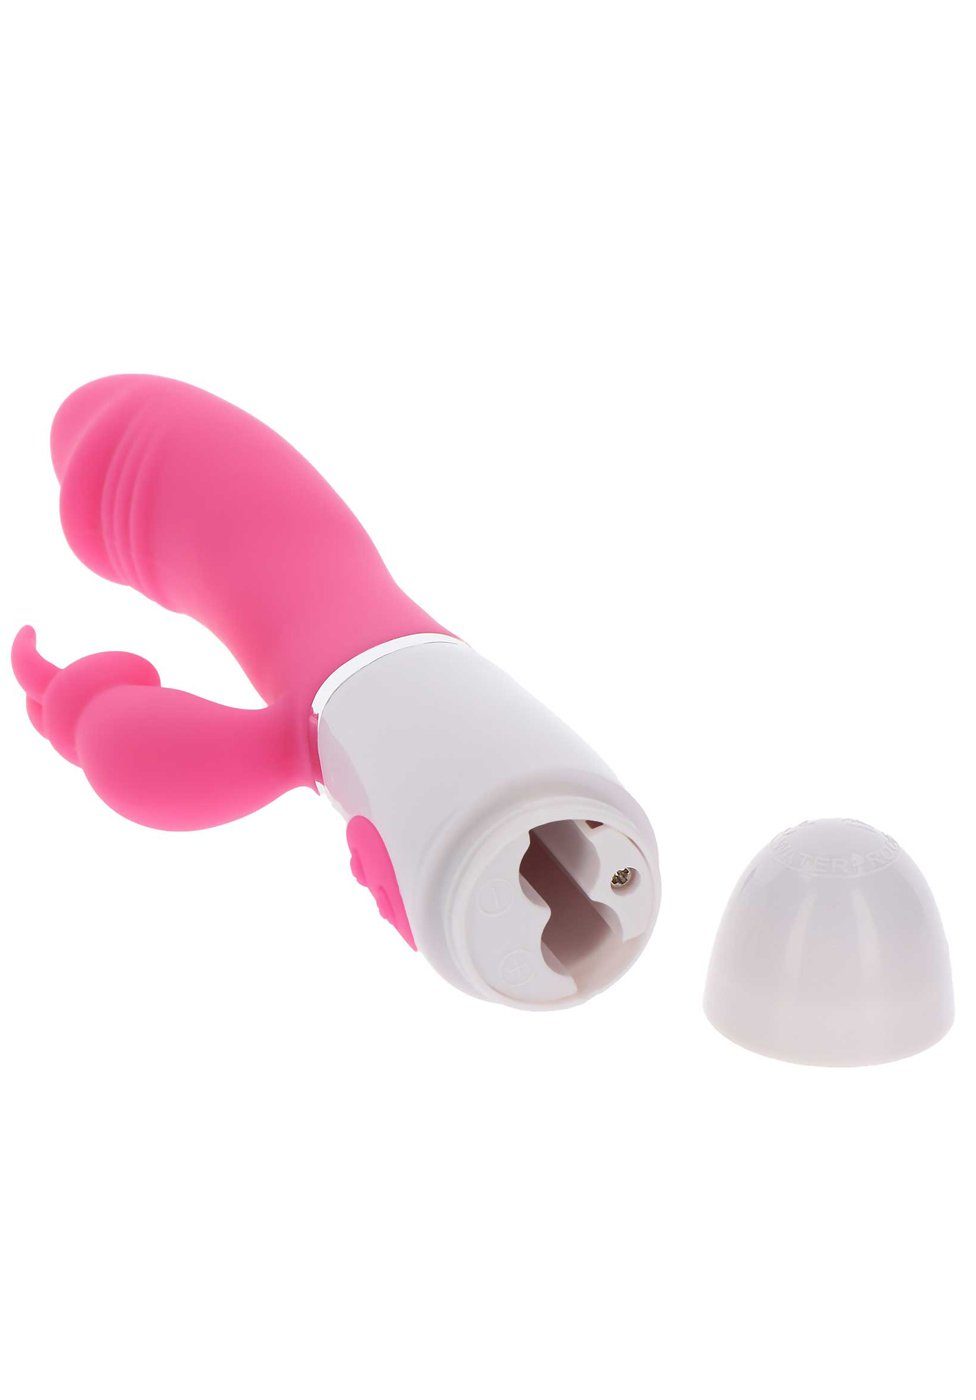 Vibrator pink Funky Rabbit TOYJOY - Rabbit-Vibrator